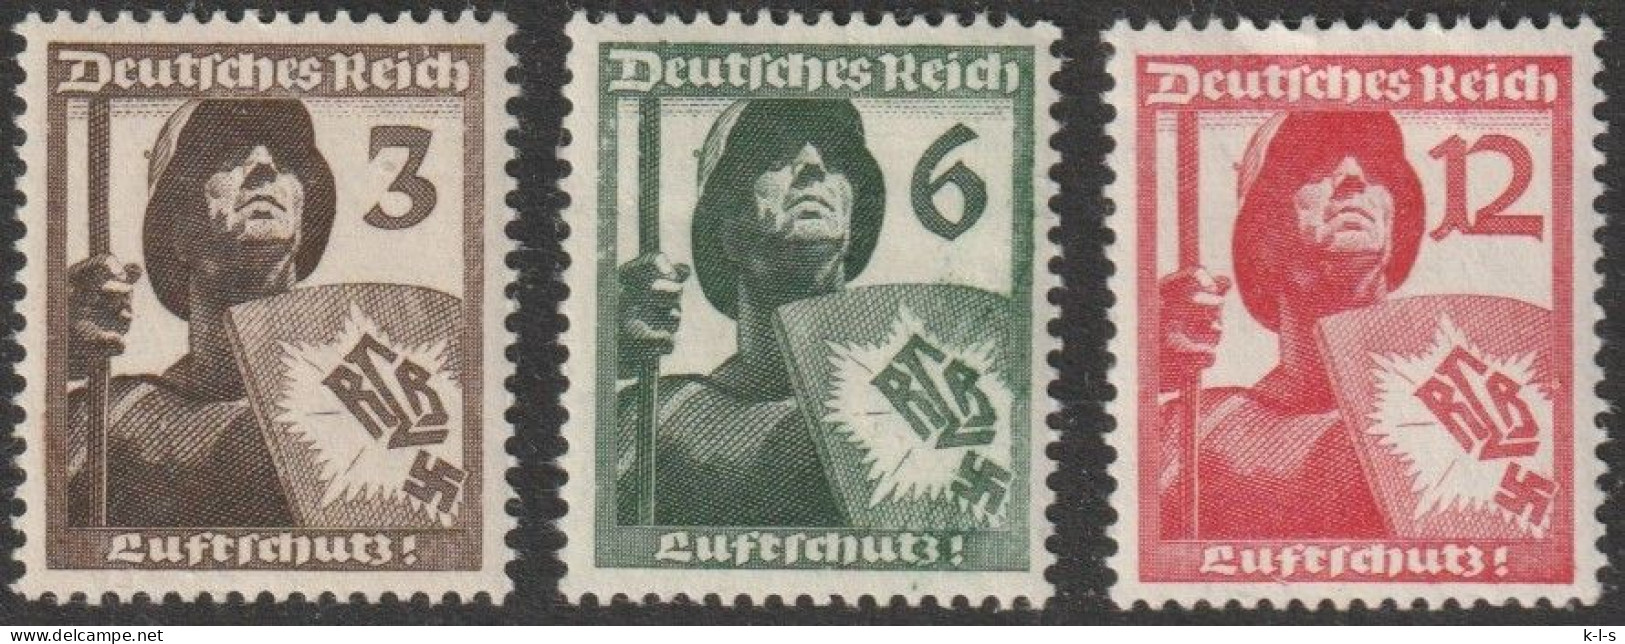 Deut. Reich: 1937, Mi. Nr. 643-45, Luftschutz.  **/MNH - Ungebraucht